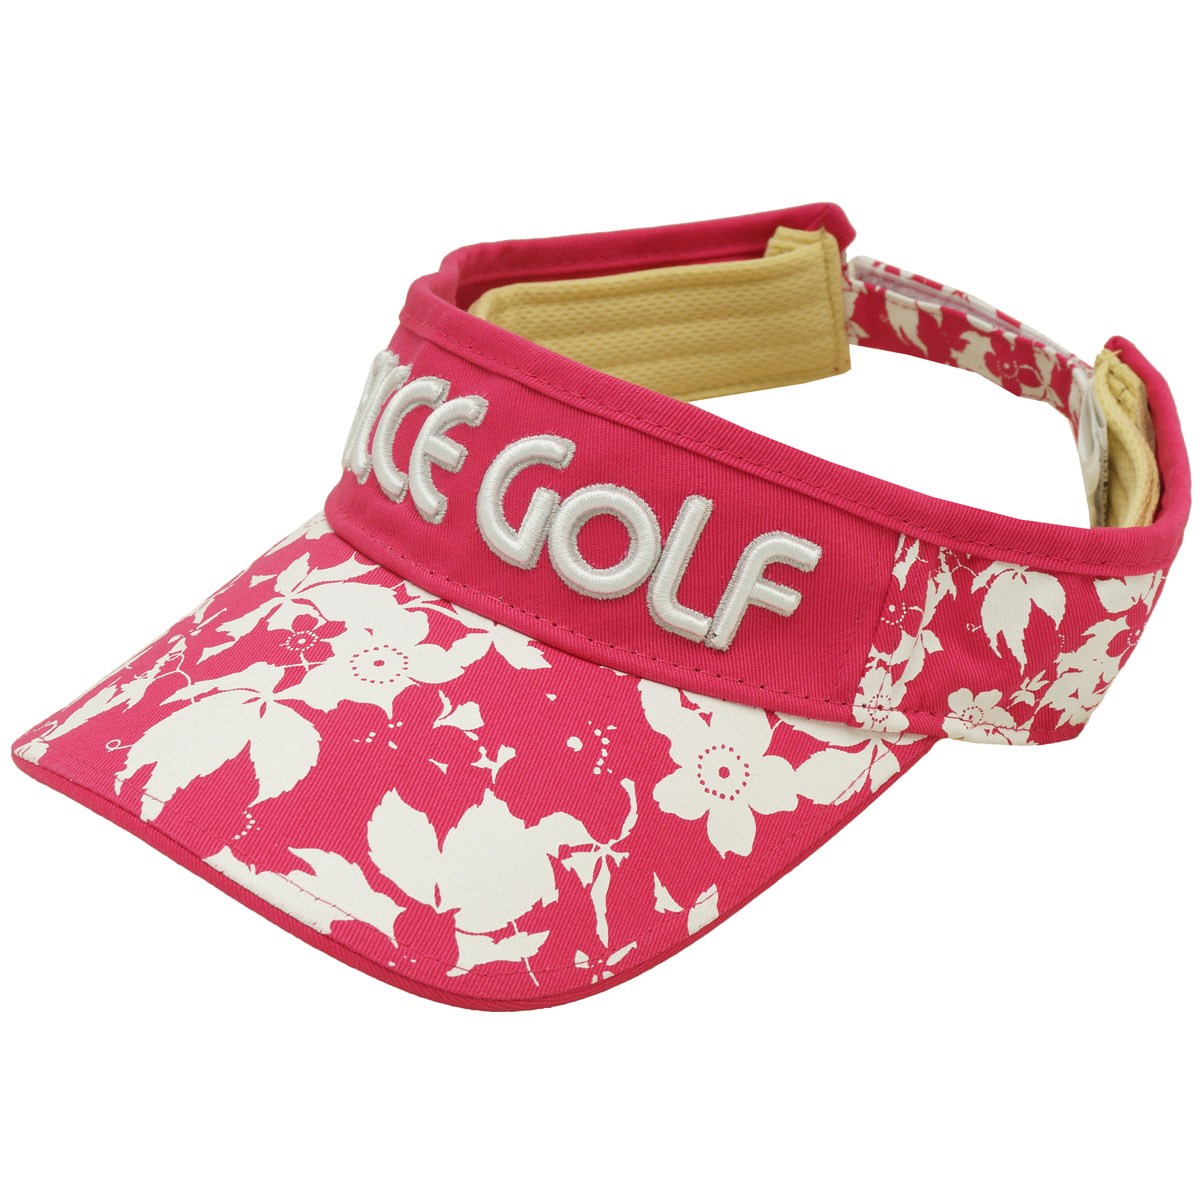  [定番モデル] フィッチェゴルフ サンバイザー ゴルフウェア 帽子